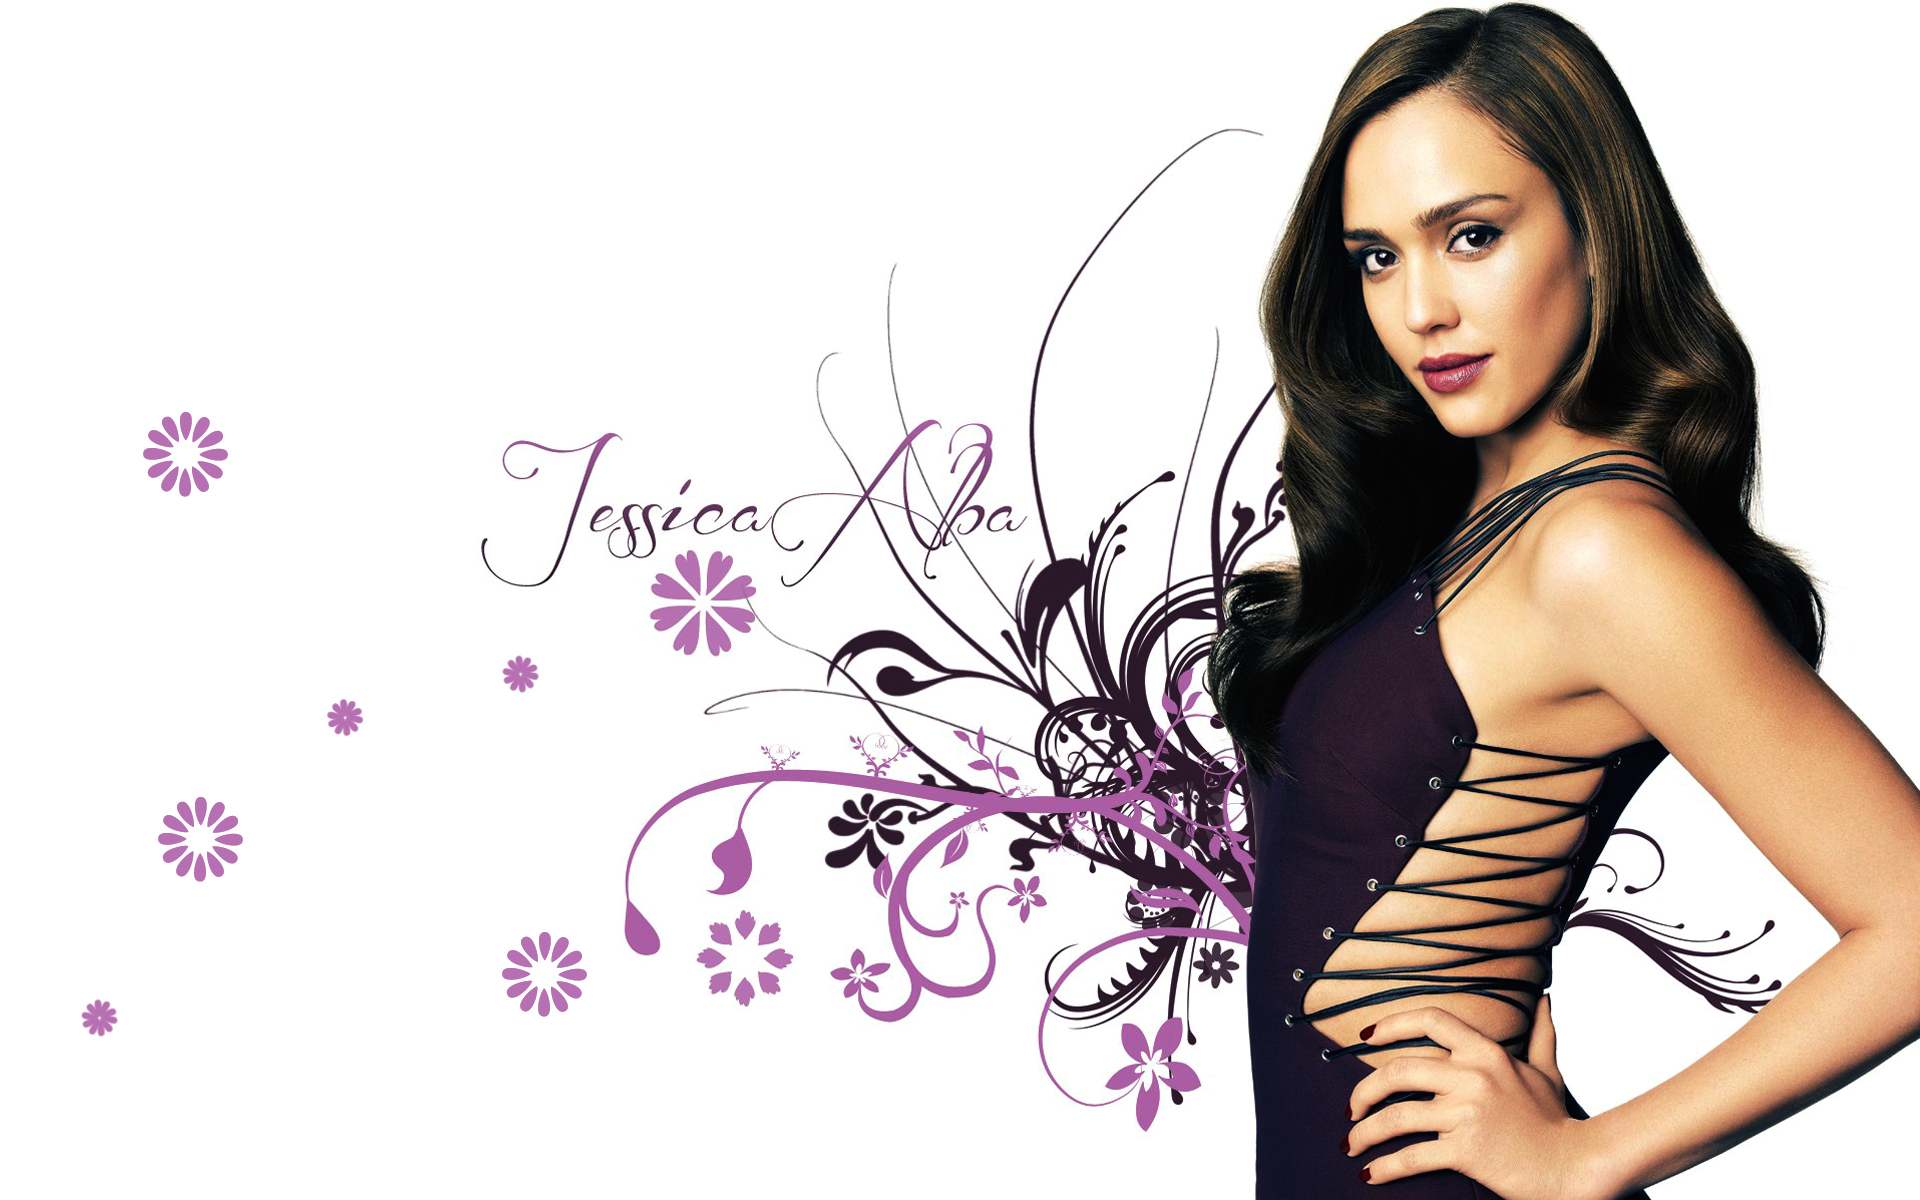 Latina Look Actress Dress Beauty Face Star Wallpaper